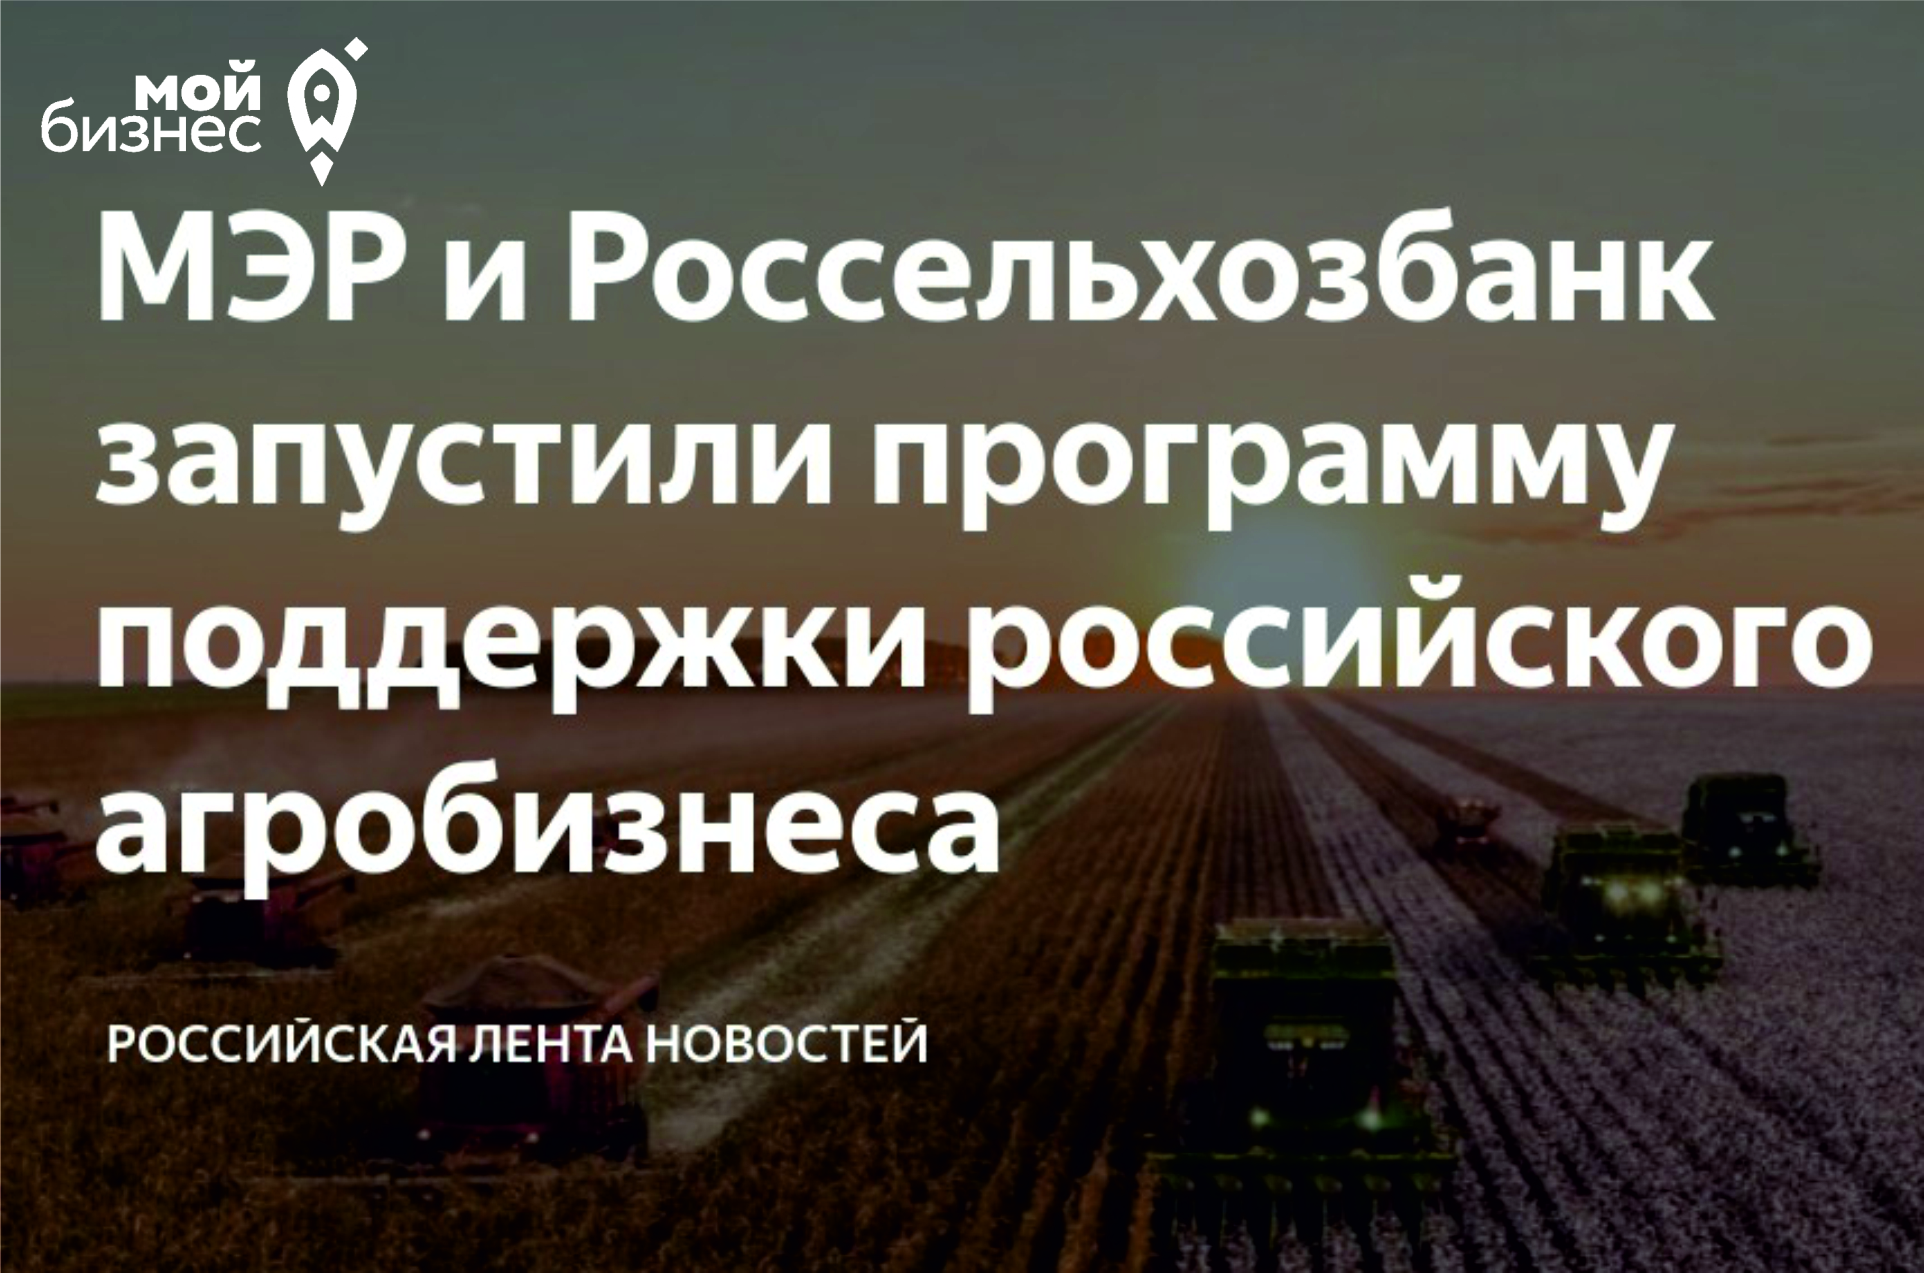 МЭР и Россельхозбанк запустили программу поддержки российского агробизнеса